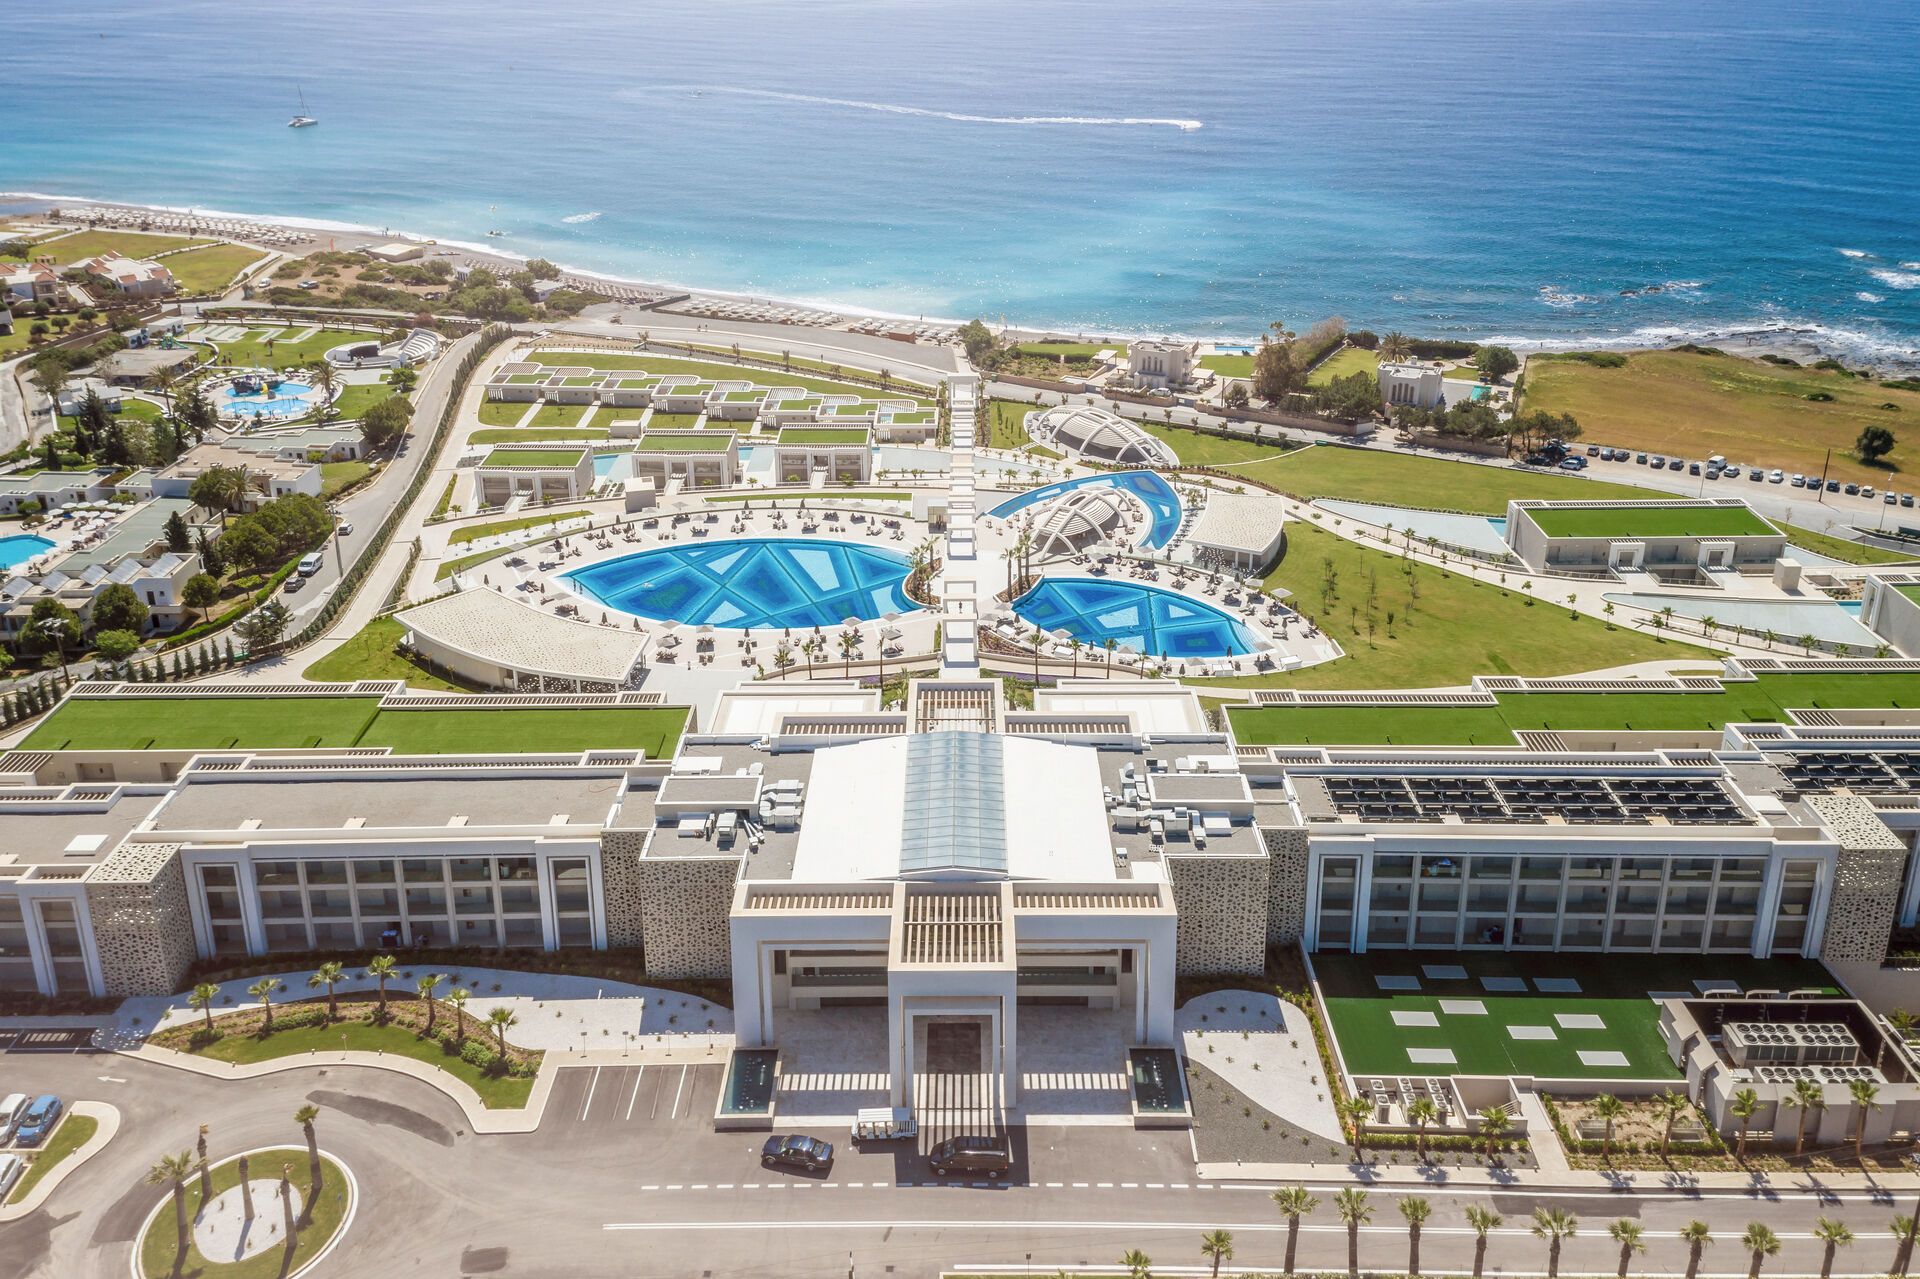 Grèce - Iles grecques - Rhodes - Hôtel Mayia Exclusive Resort & Spa 5*